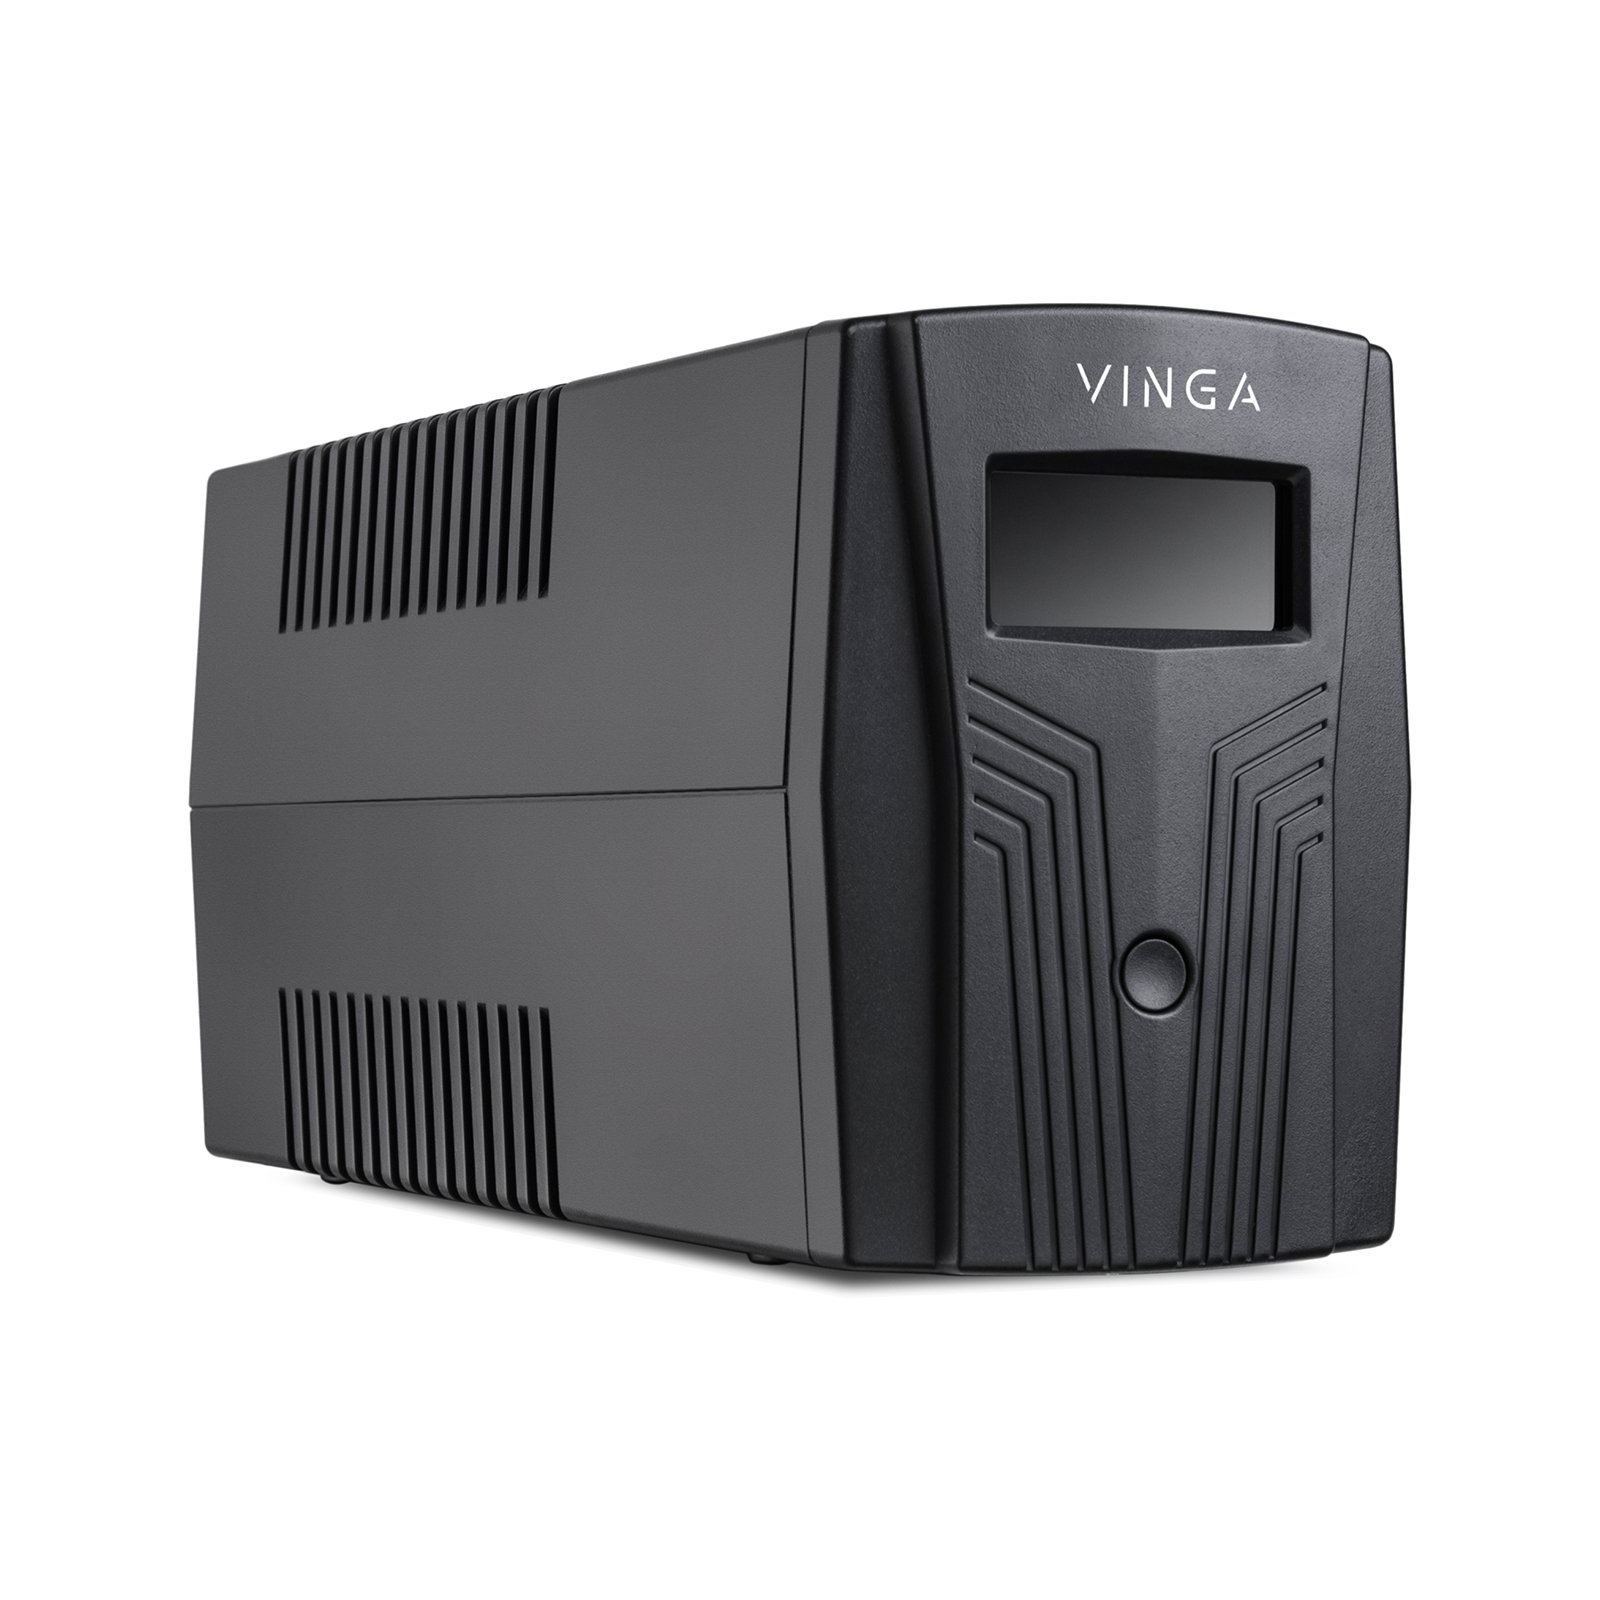 Источник бесперебойного питания Vinga LCD 1200VA plastic case (VPC-1200P) изображение 5